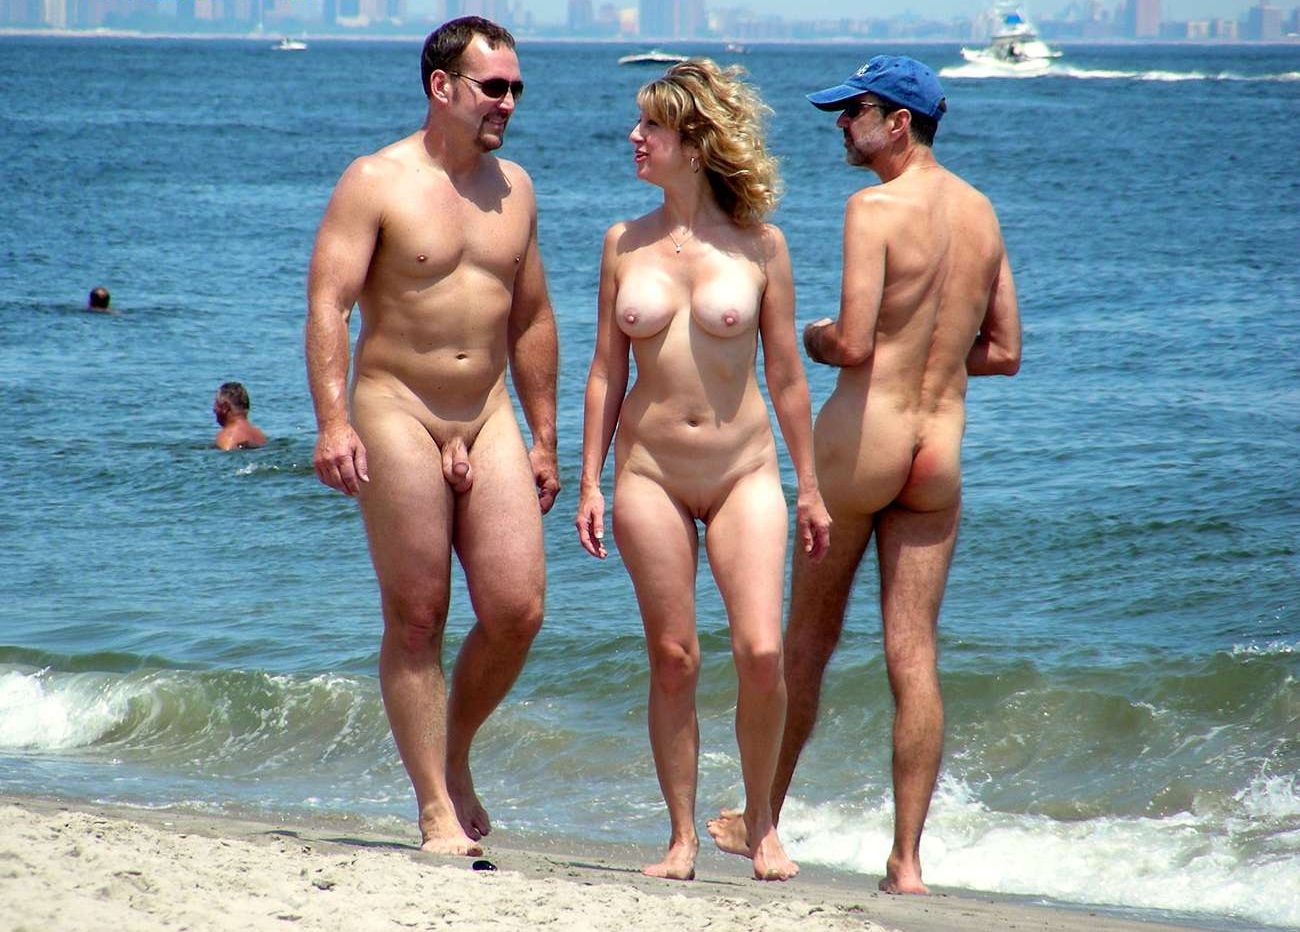 Porn on beach